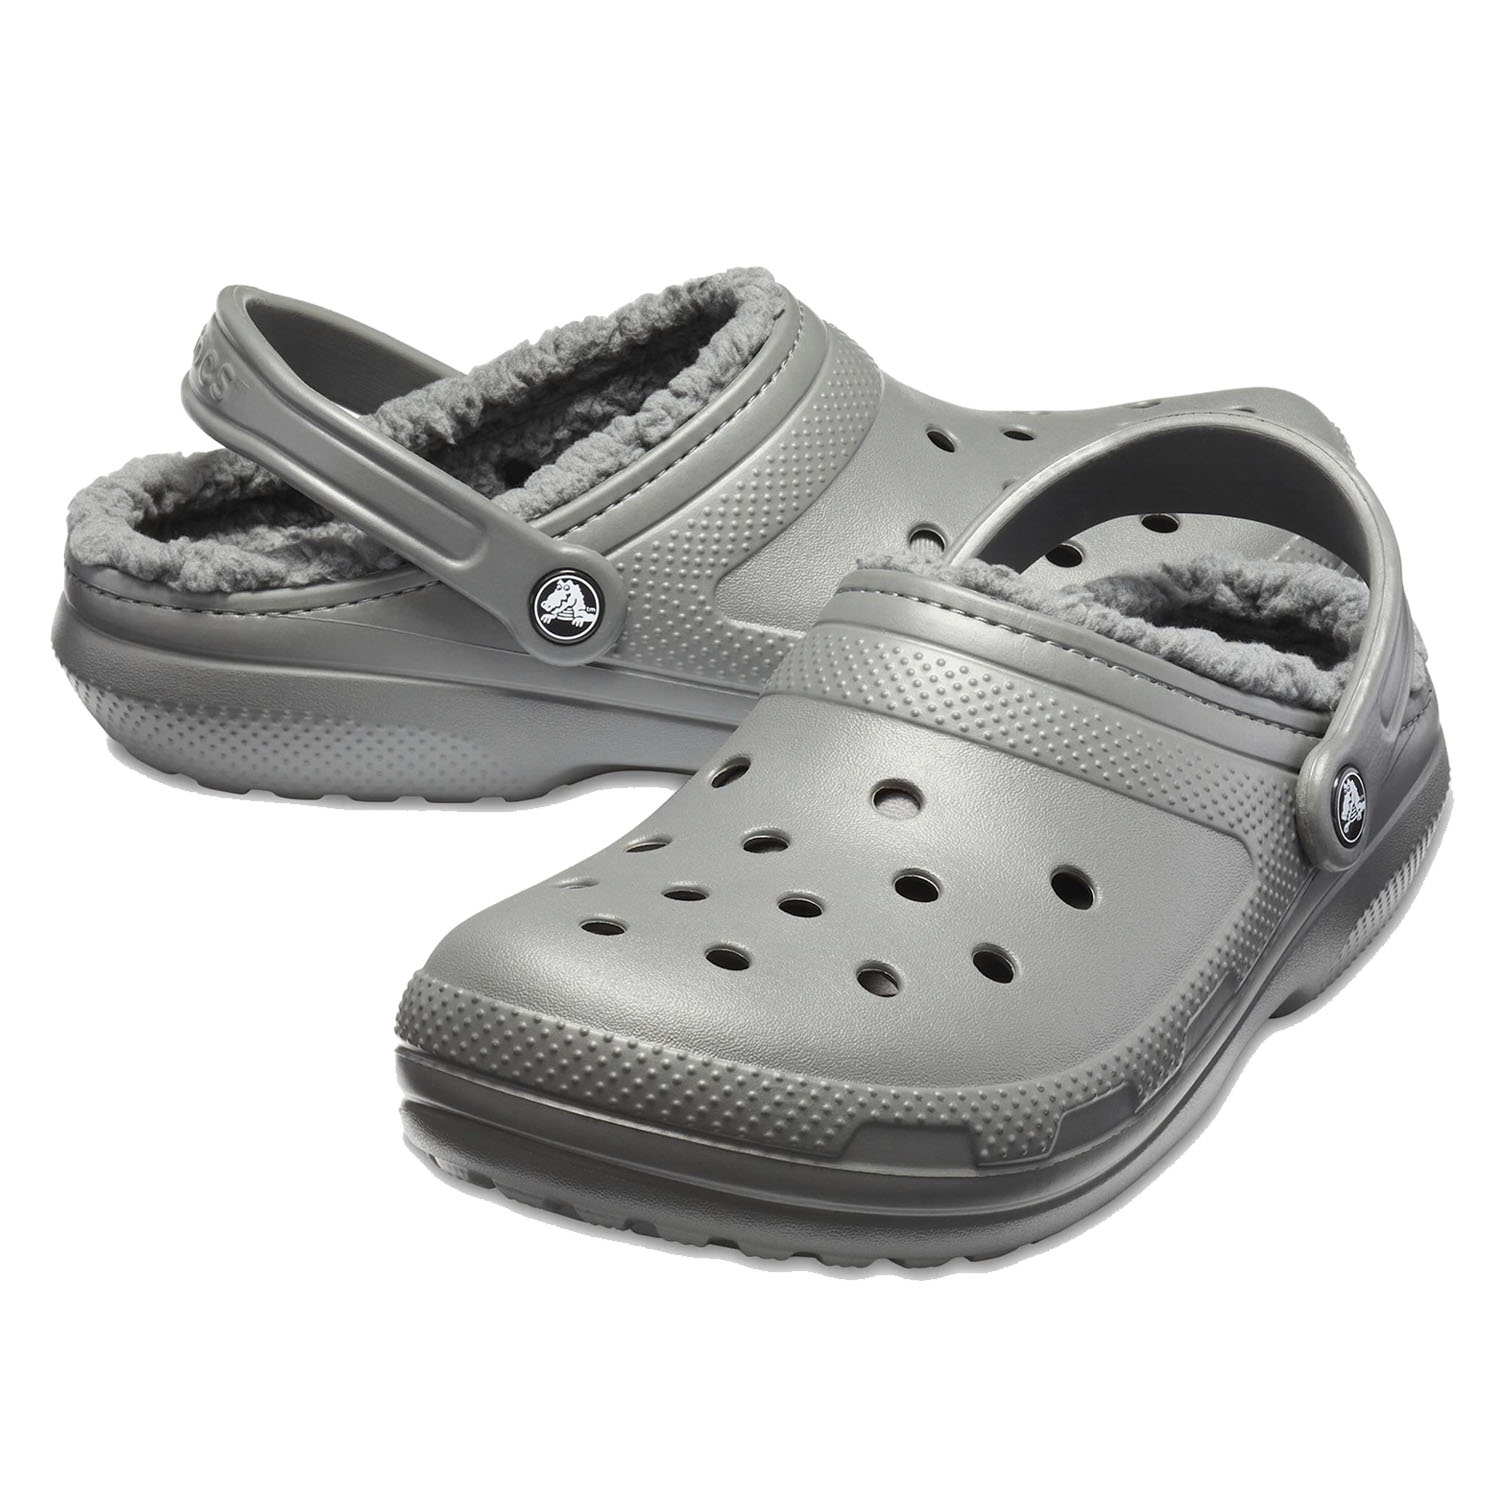 Сандалии Crocs Classic Lined Clog Slate Grey/Smoke